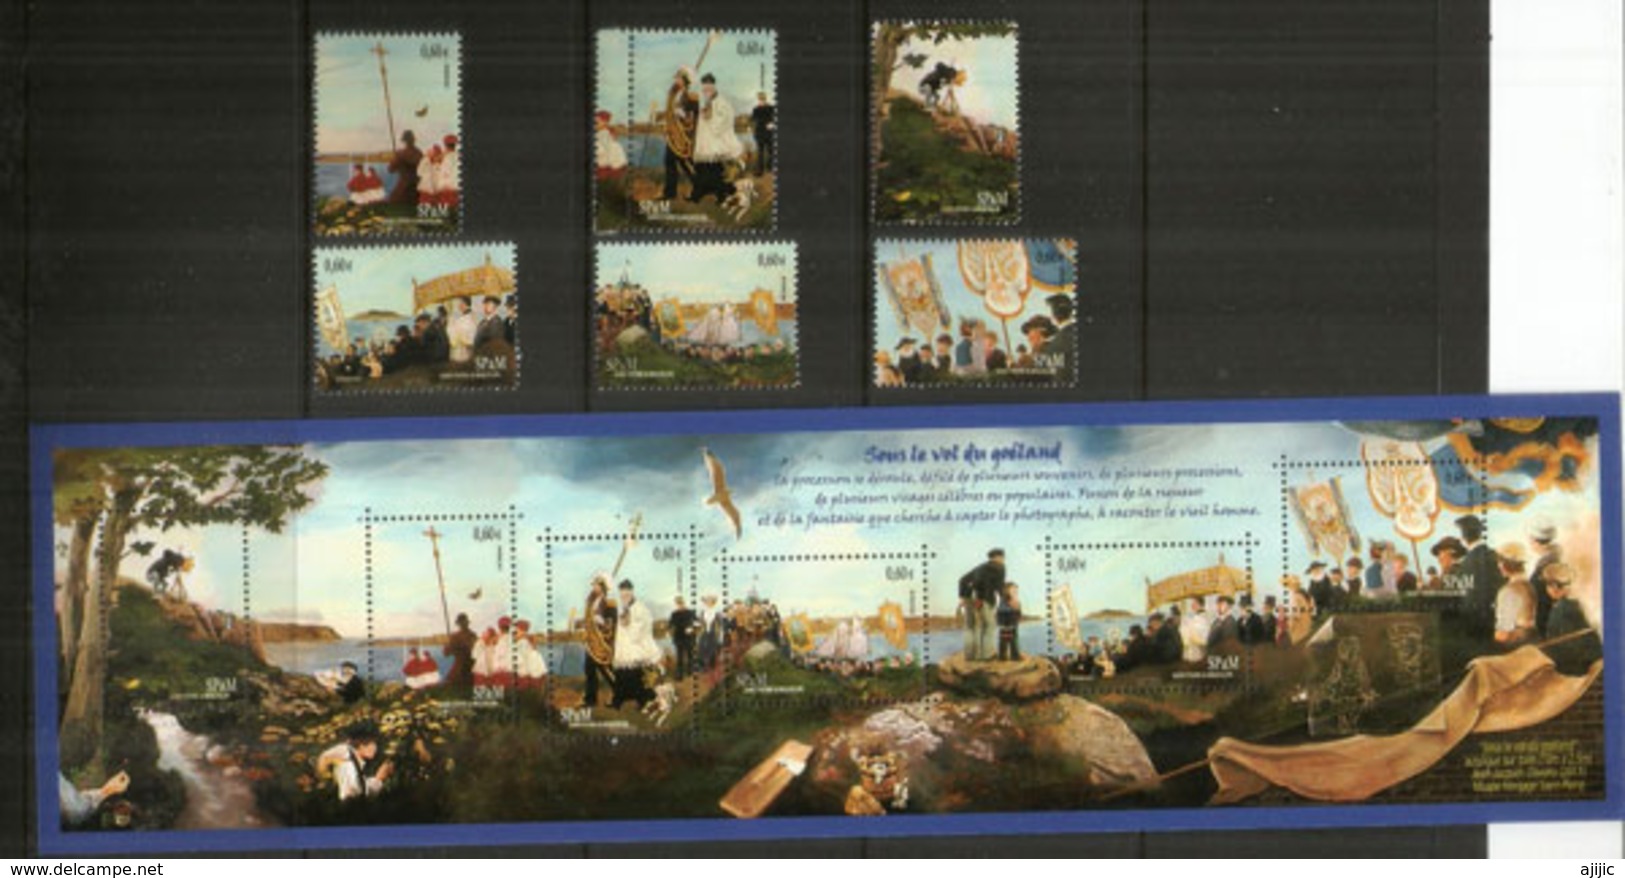 La Traditionnelle Procession à L'île Aux Marins Pour L'Assomption. Bloc-feuillet + Série Neufs ** Côte 36,00 Euro - Unused Stamps